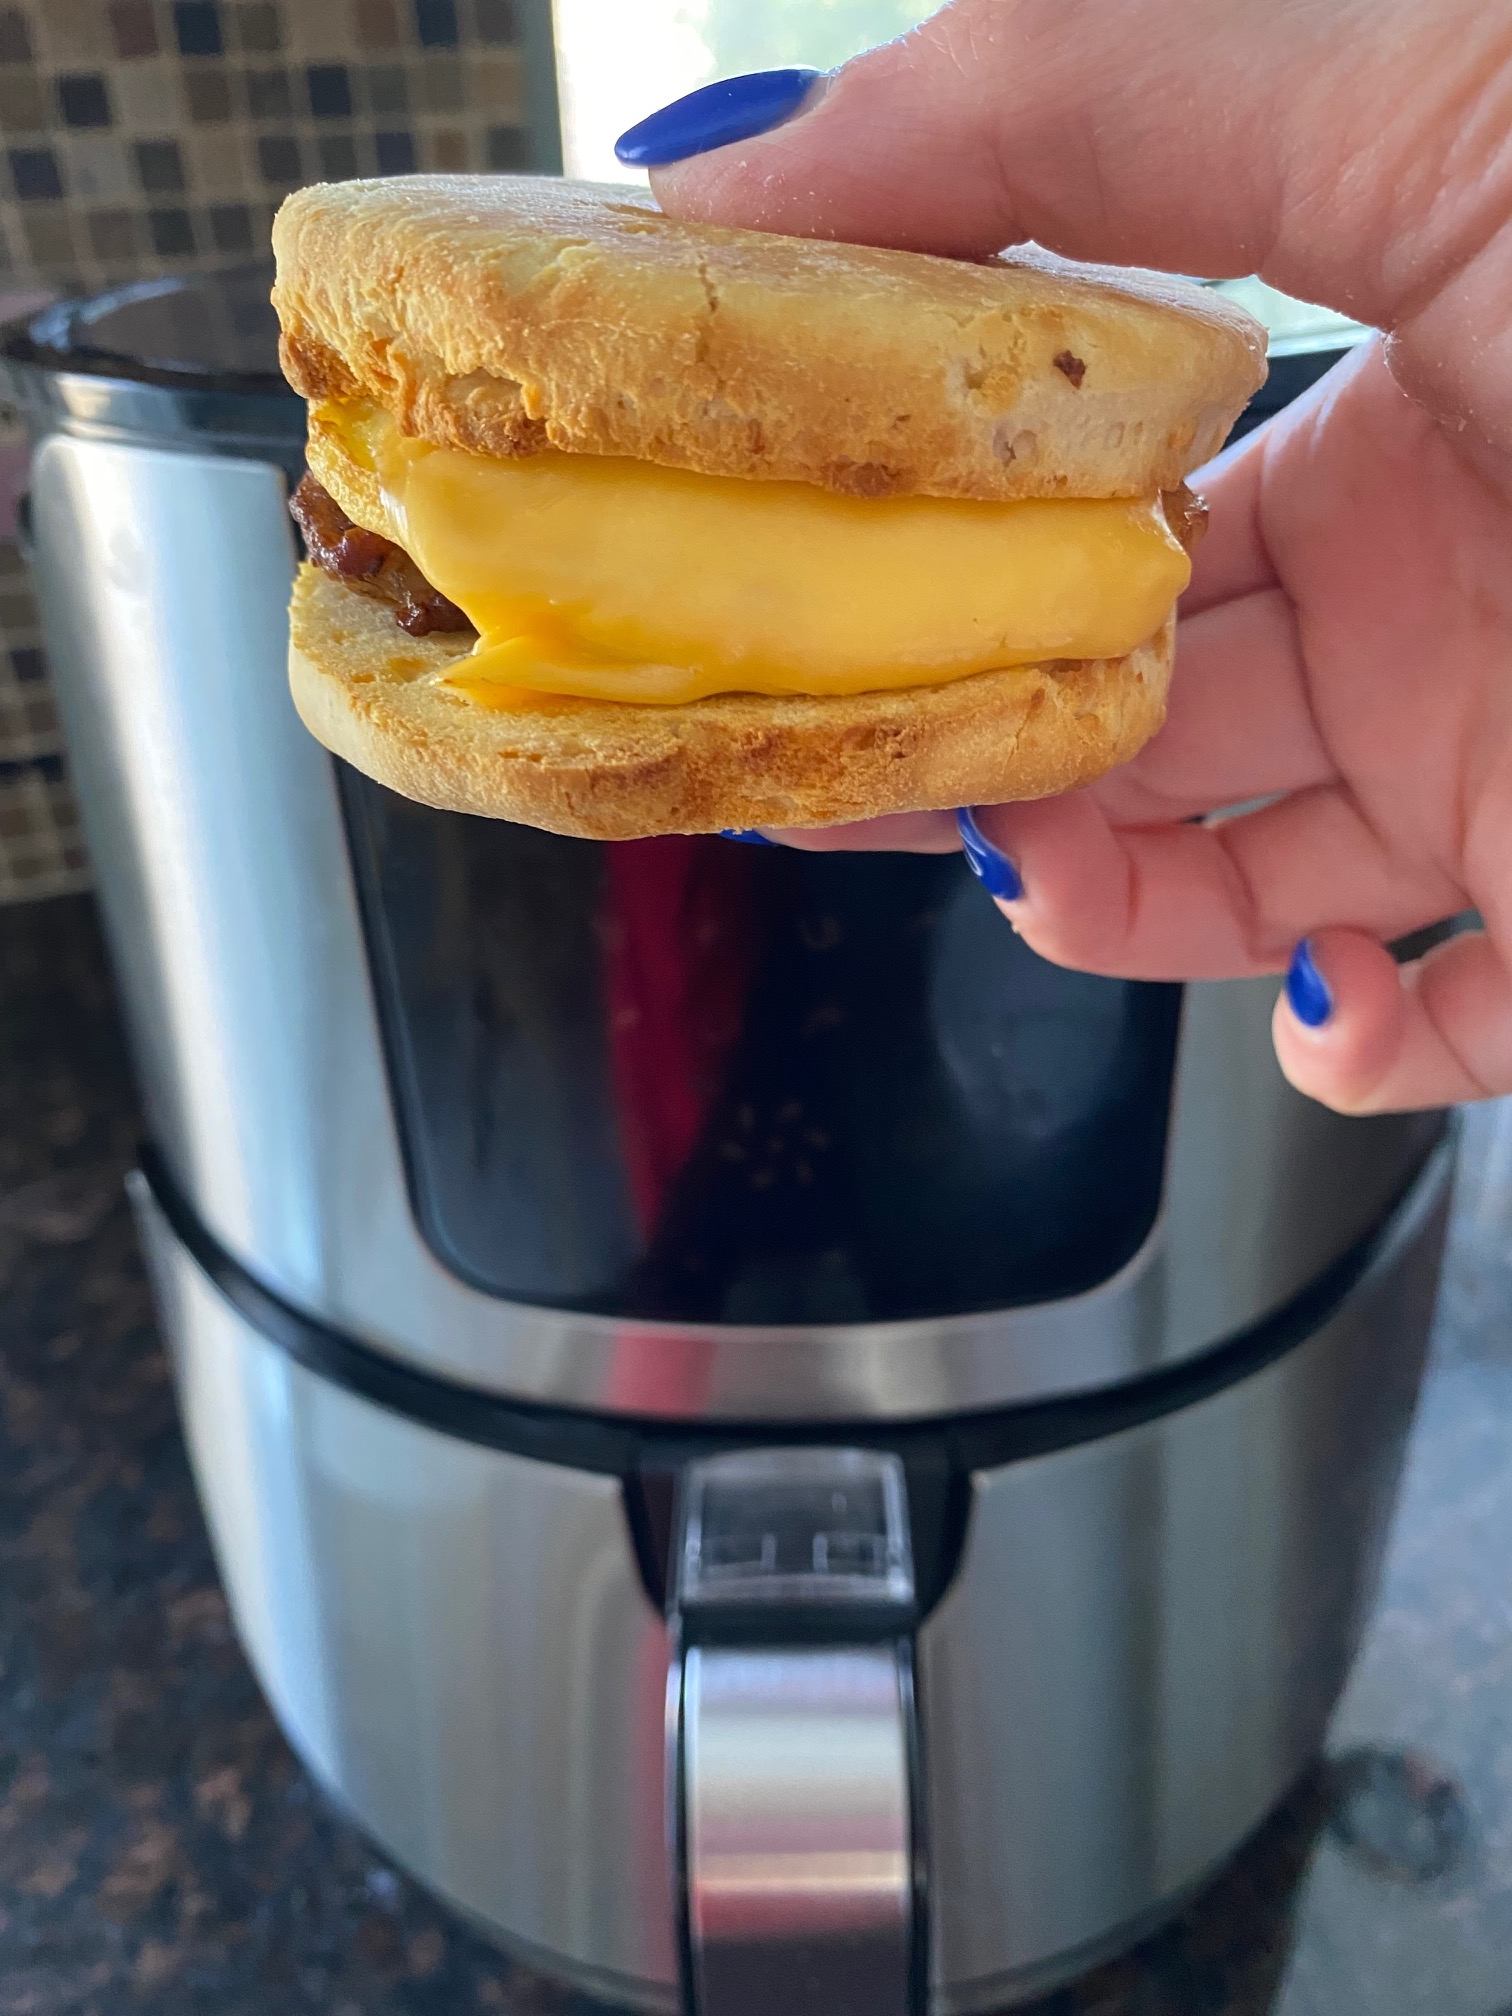 https://www.melaniecooks.com/wp-content/uploads/2022/03/Air-Fryer-Frozen-Breakfast-Sandwich-11-rotated.jpg